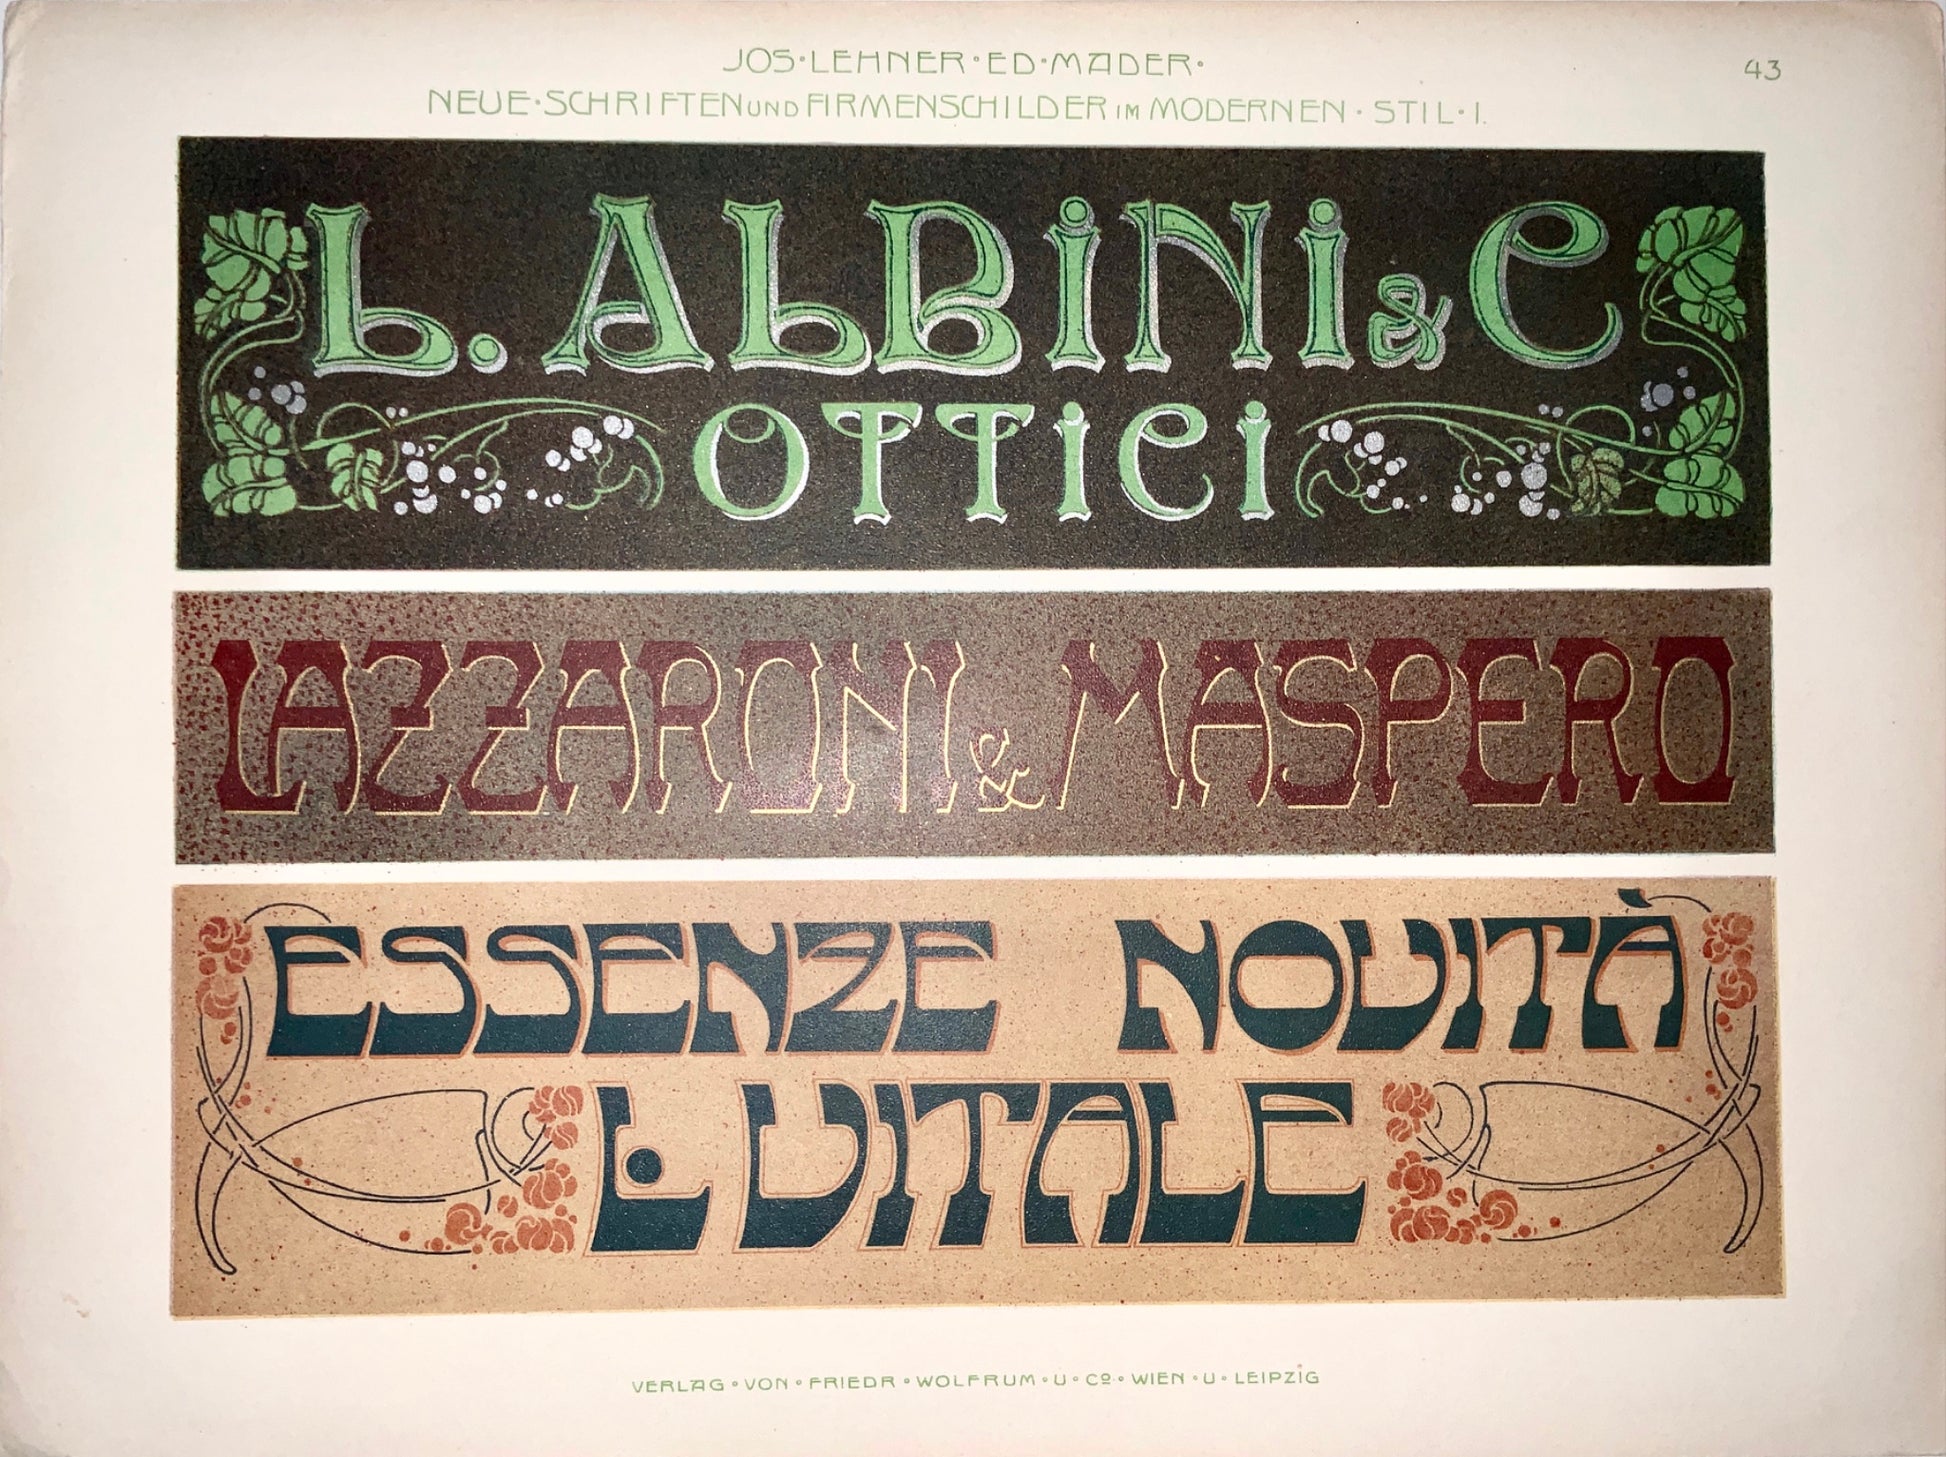 1890 JUGENDSTIL ADVERTISING Typography Italian Style - Lehner Mader 45 cm